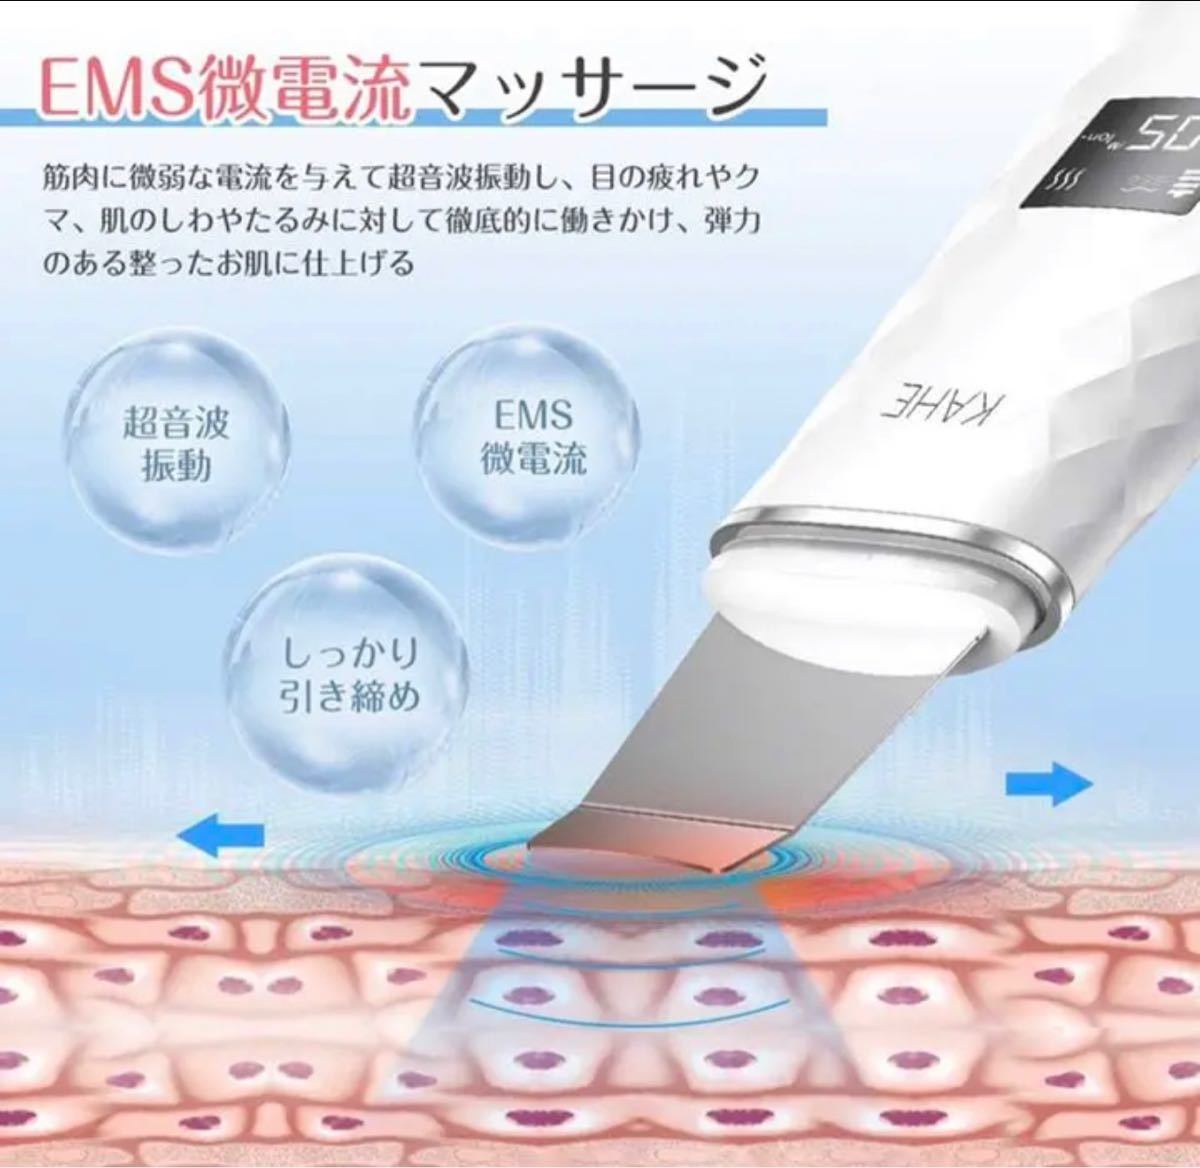 ウォーターピーリング 超音波 ピーリング 美顔器 超音波振動 EMS イオン導入